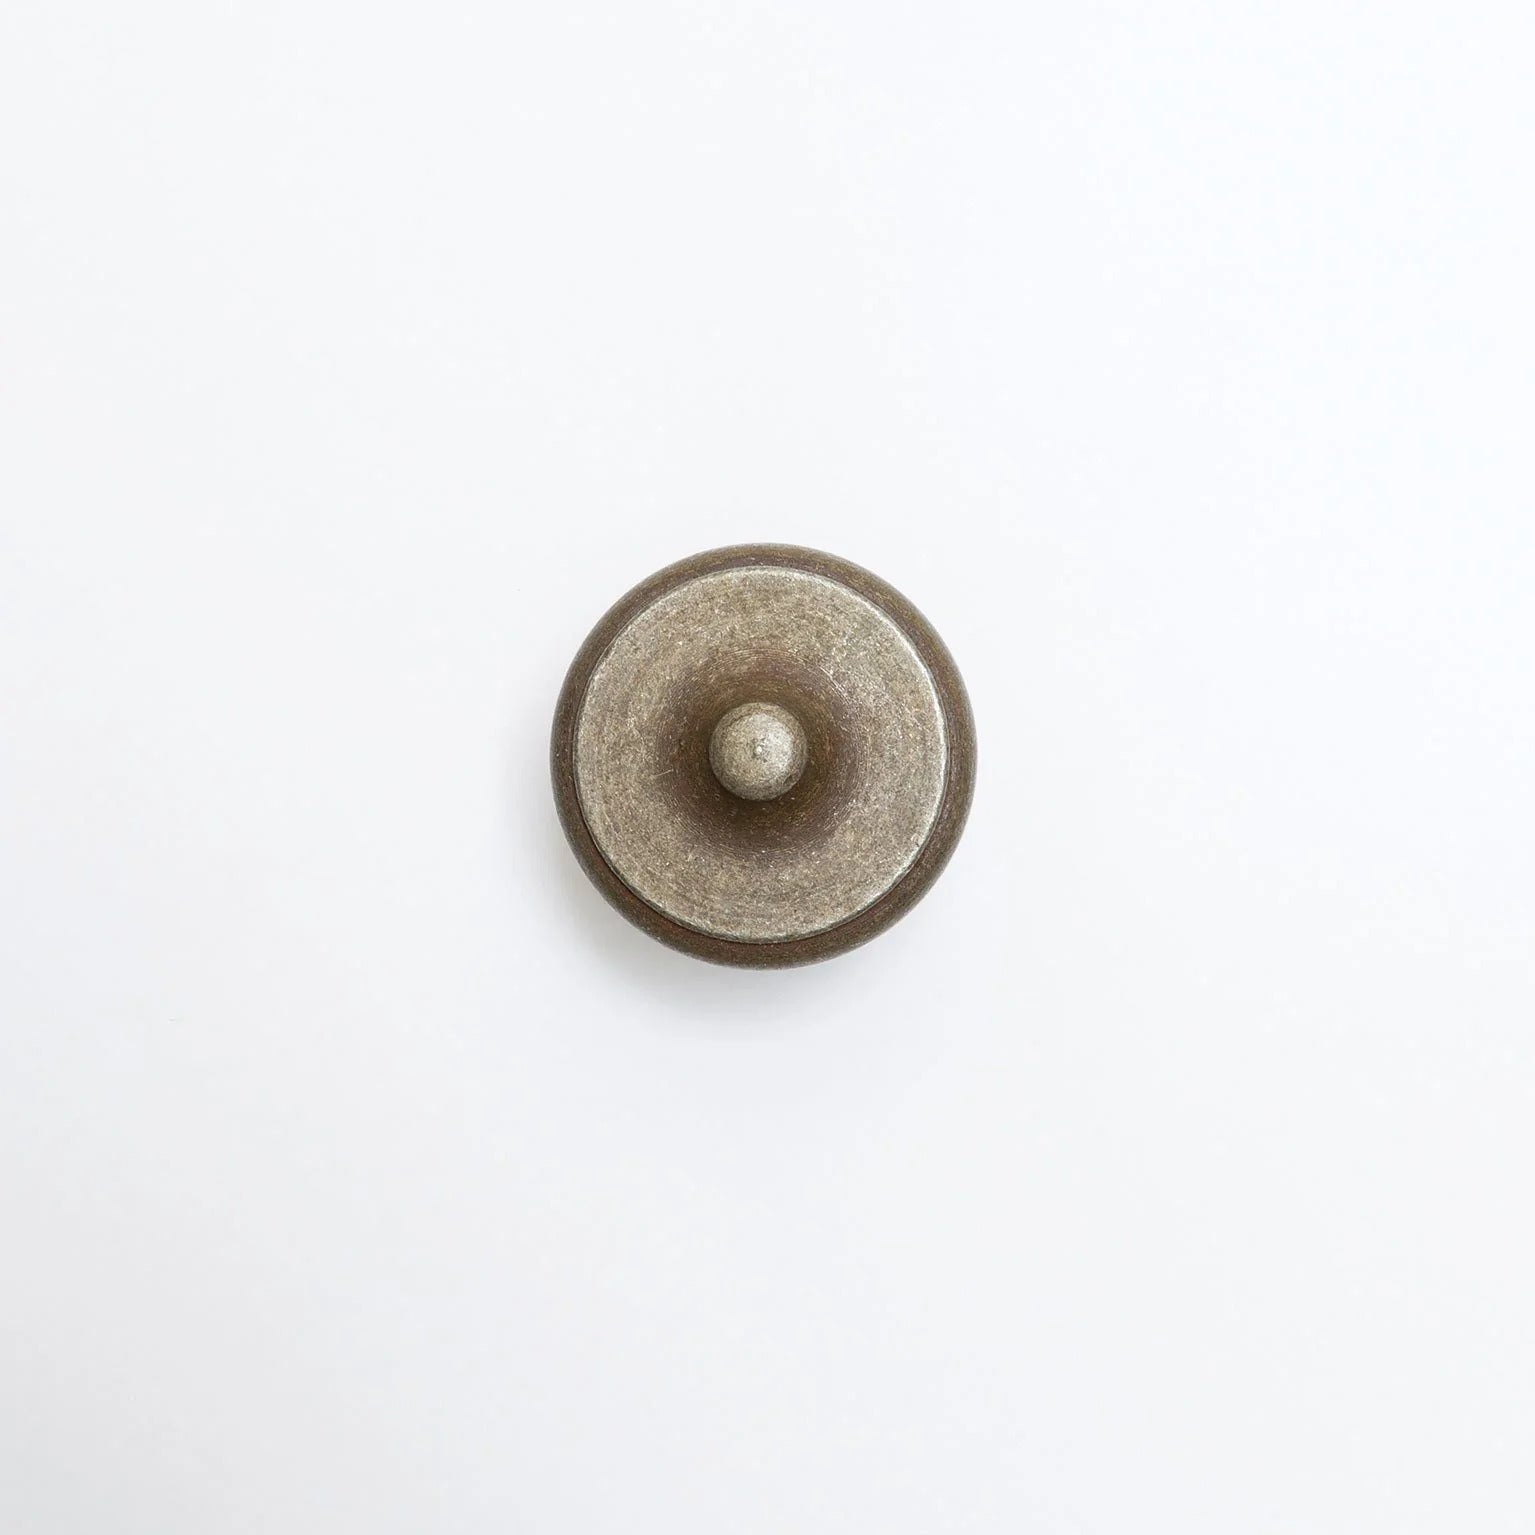 Antique knob